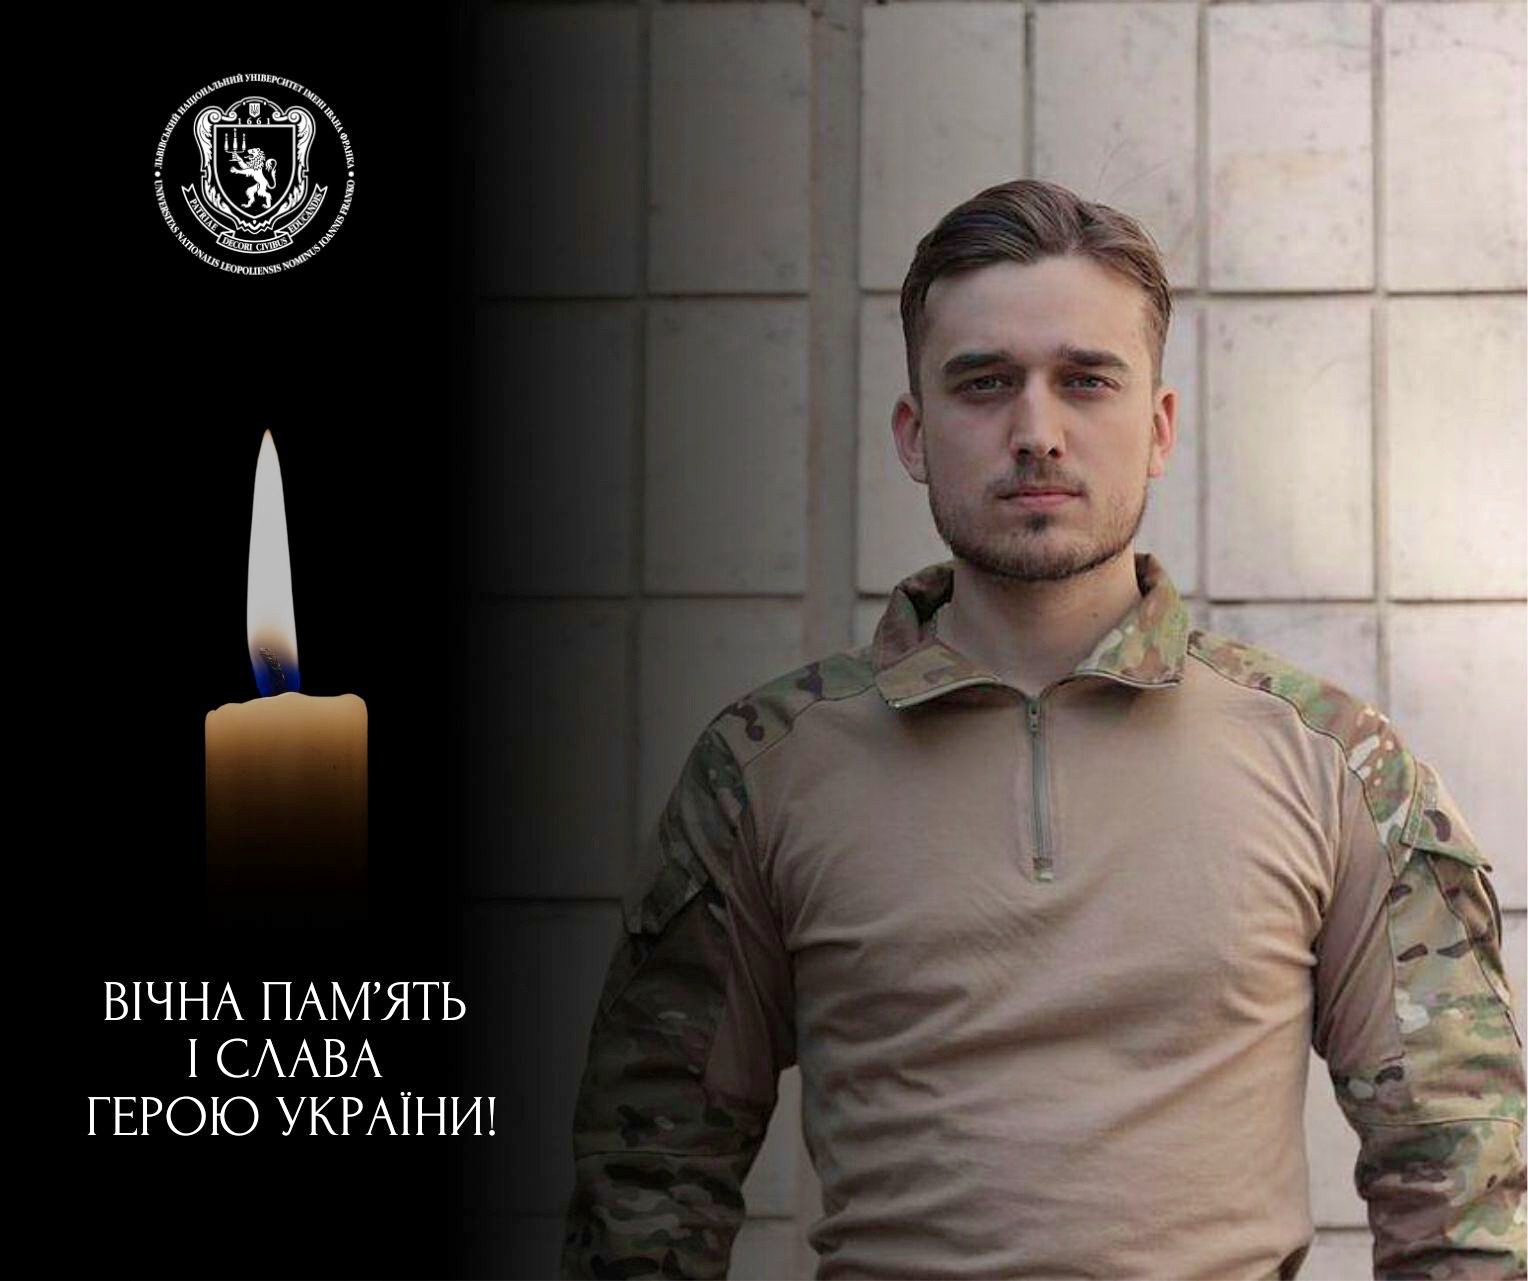 Захищаючи Україну, загинув випускник Університету Богдан Сенюк